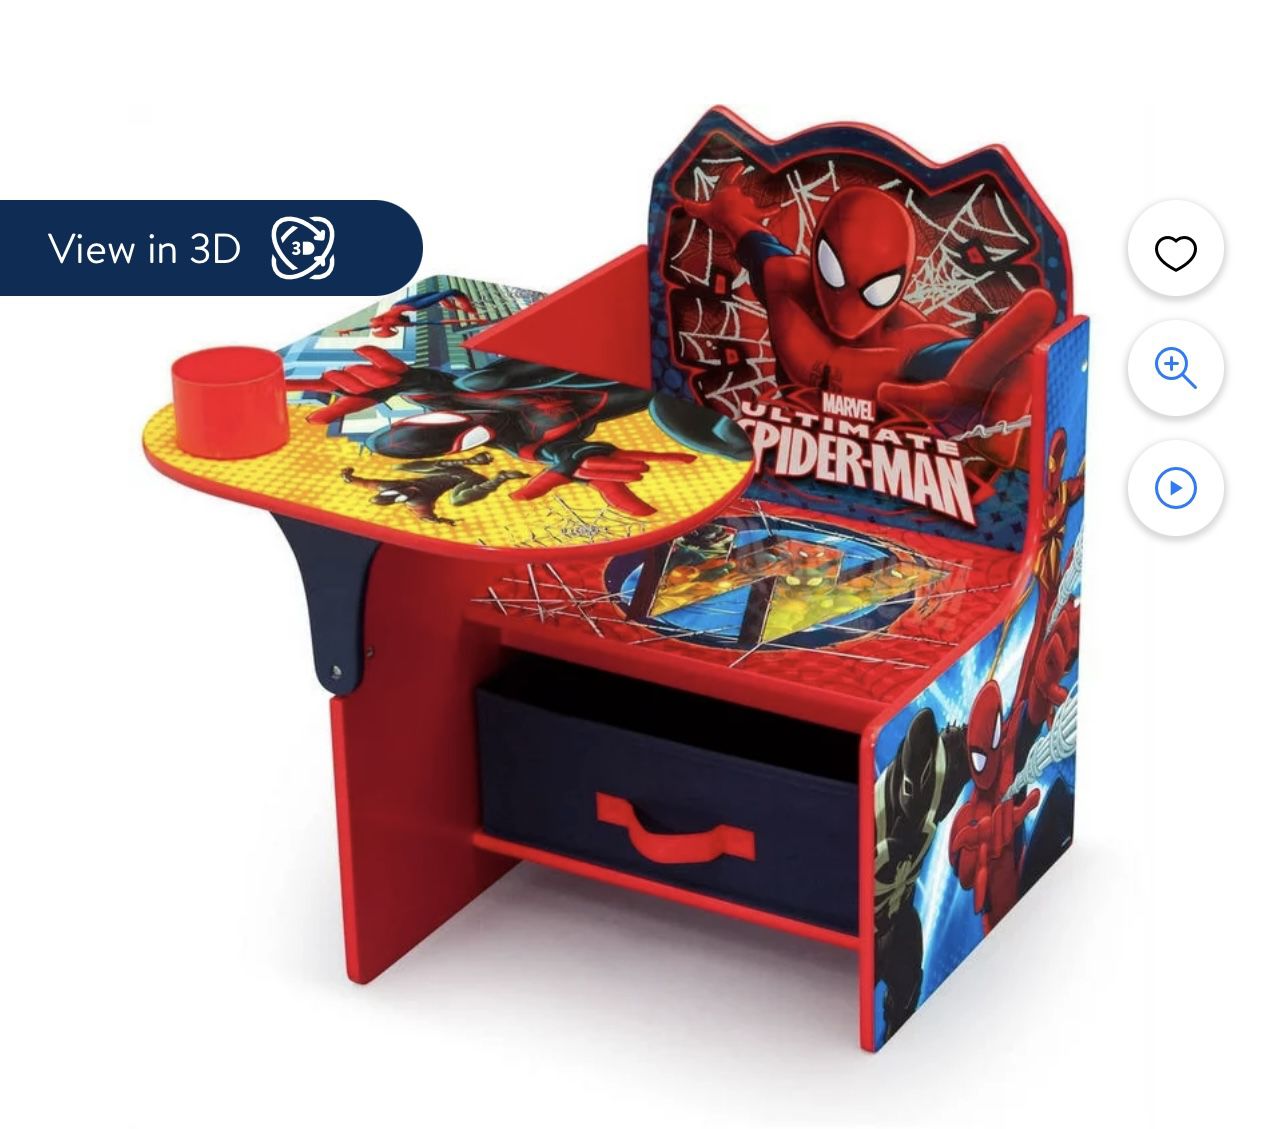 Marvel Spider-Man Chair Desk with Storage Bin by Delta Children, Greenguard Gold Certified